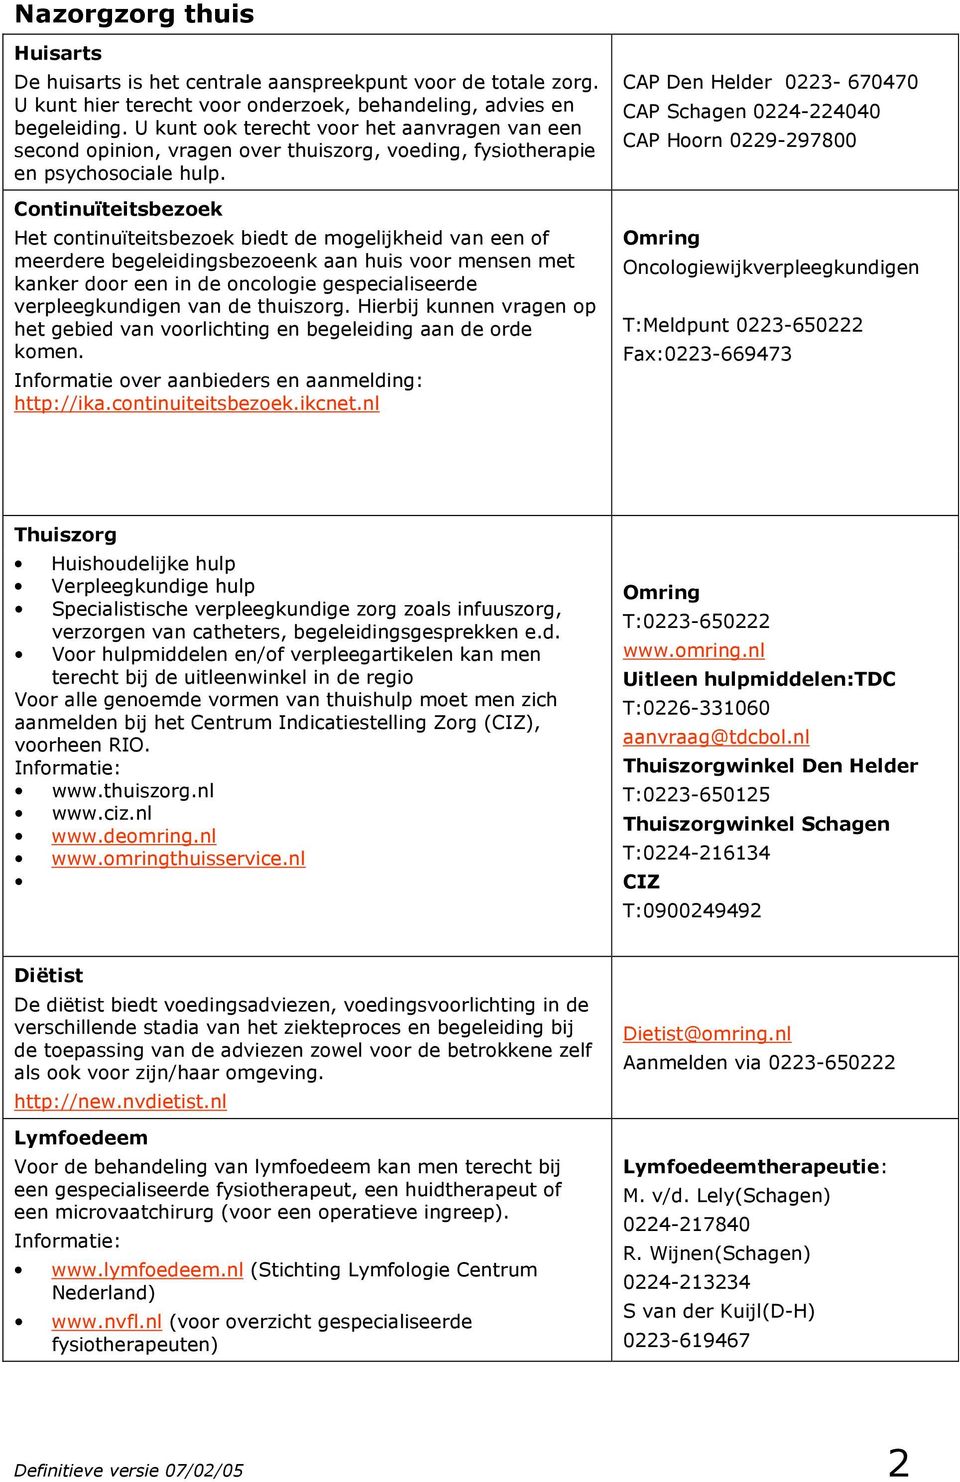 Nazorgwijzer. voor mensen met kanker en hun naasten in de regio Kop van  Noordholland - PDF Gratis download